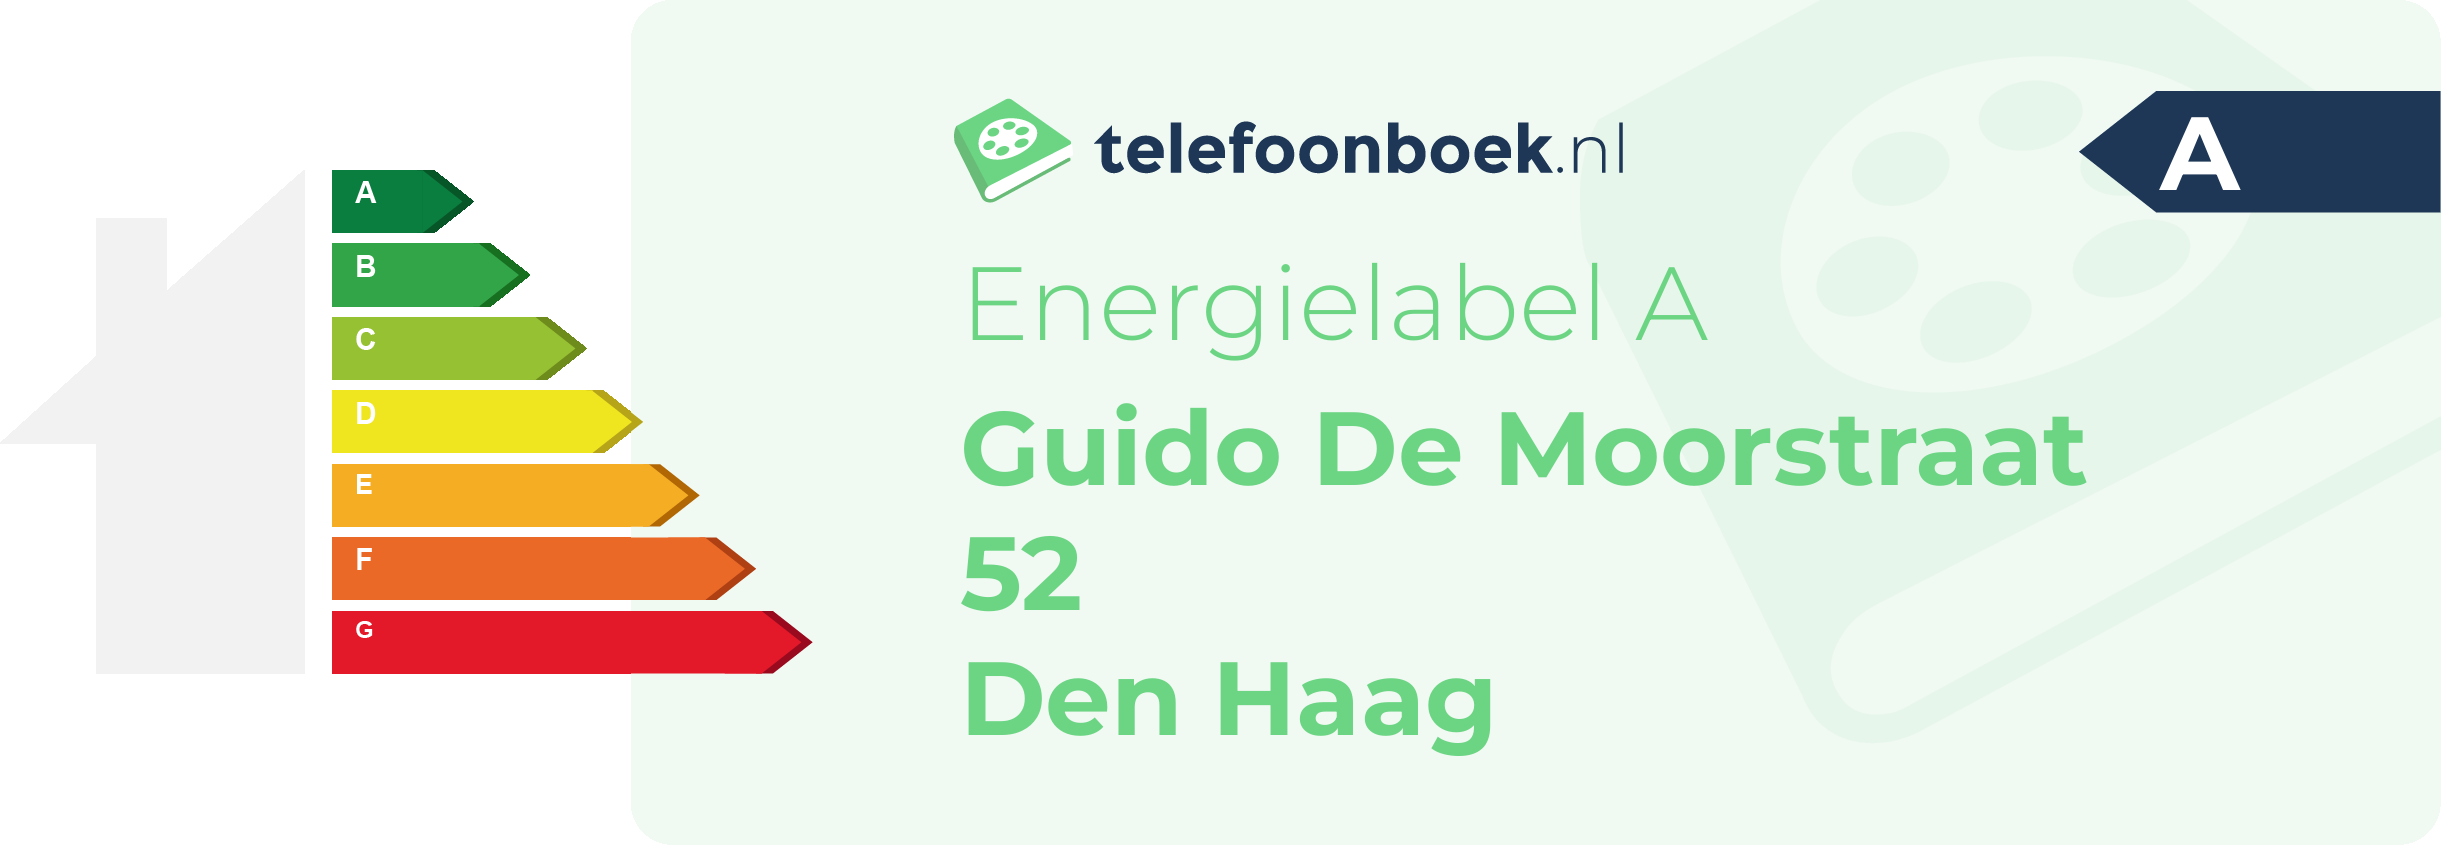 Energielabel Guido De Moorstraat 52 Den Haag